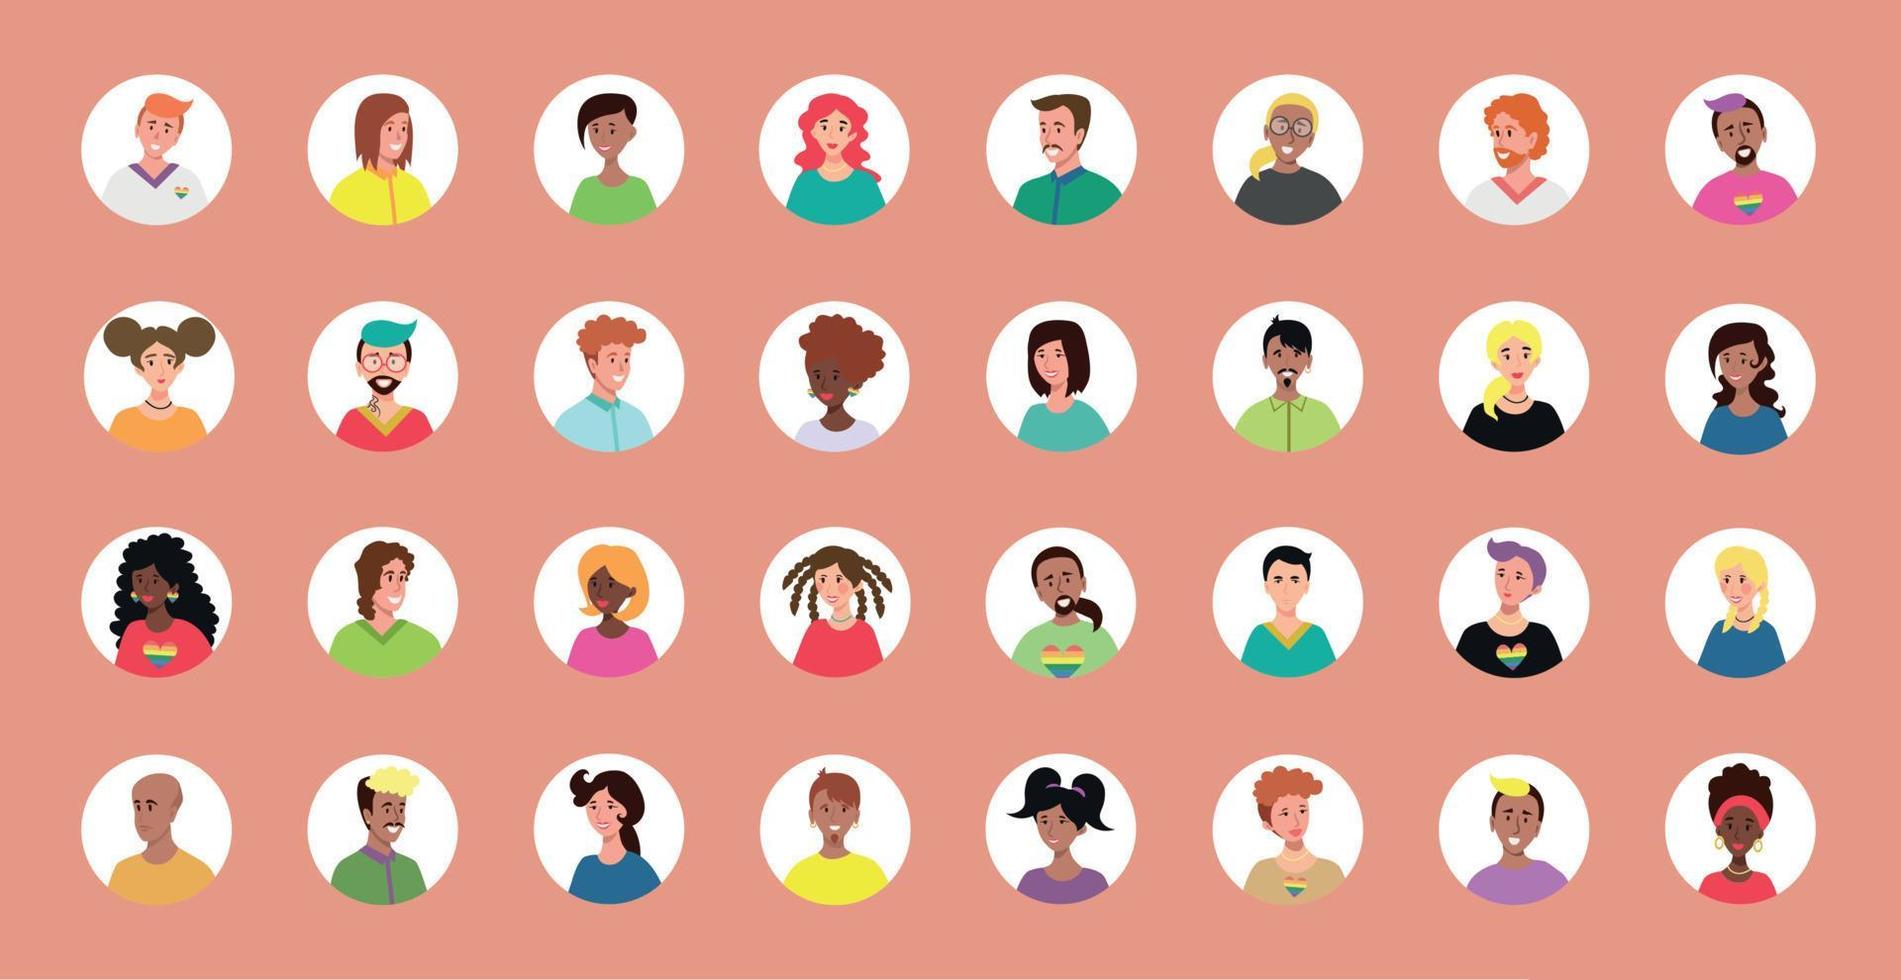 conjunto de 32 avatares en círculos con rostros de jóvenes. imagen de diferentes razas y nacionalidades, mujeres y hombres. conjunto de iconos de perfil de usuario. insignias redondas con gente feliz - vector